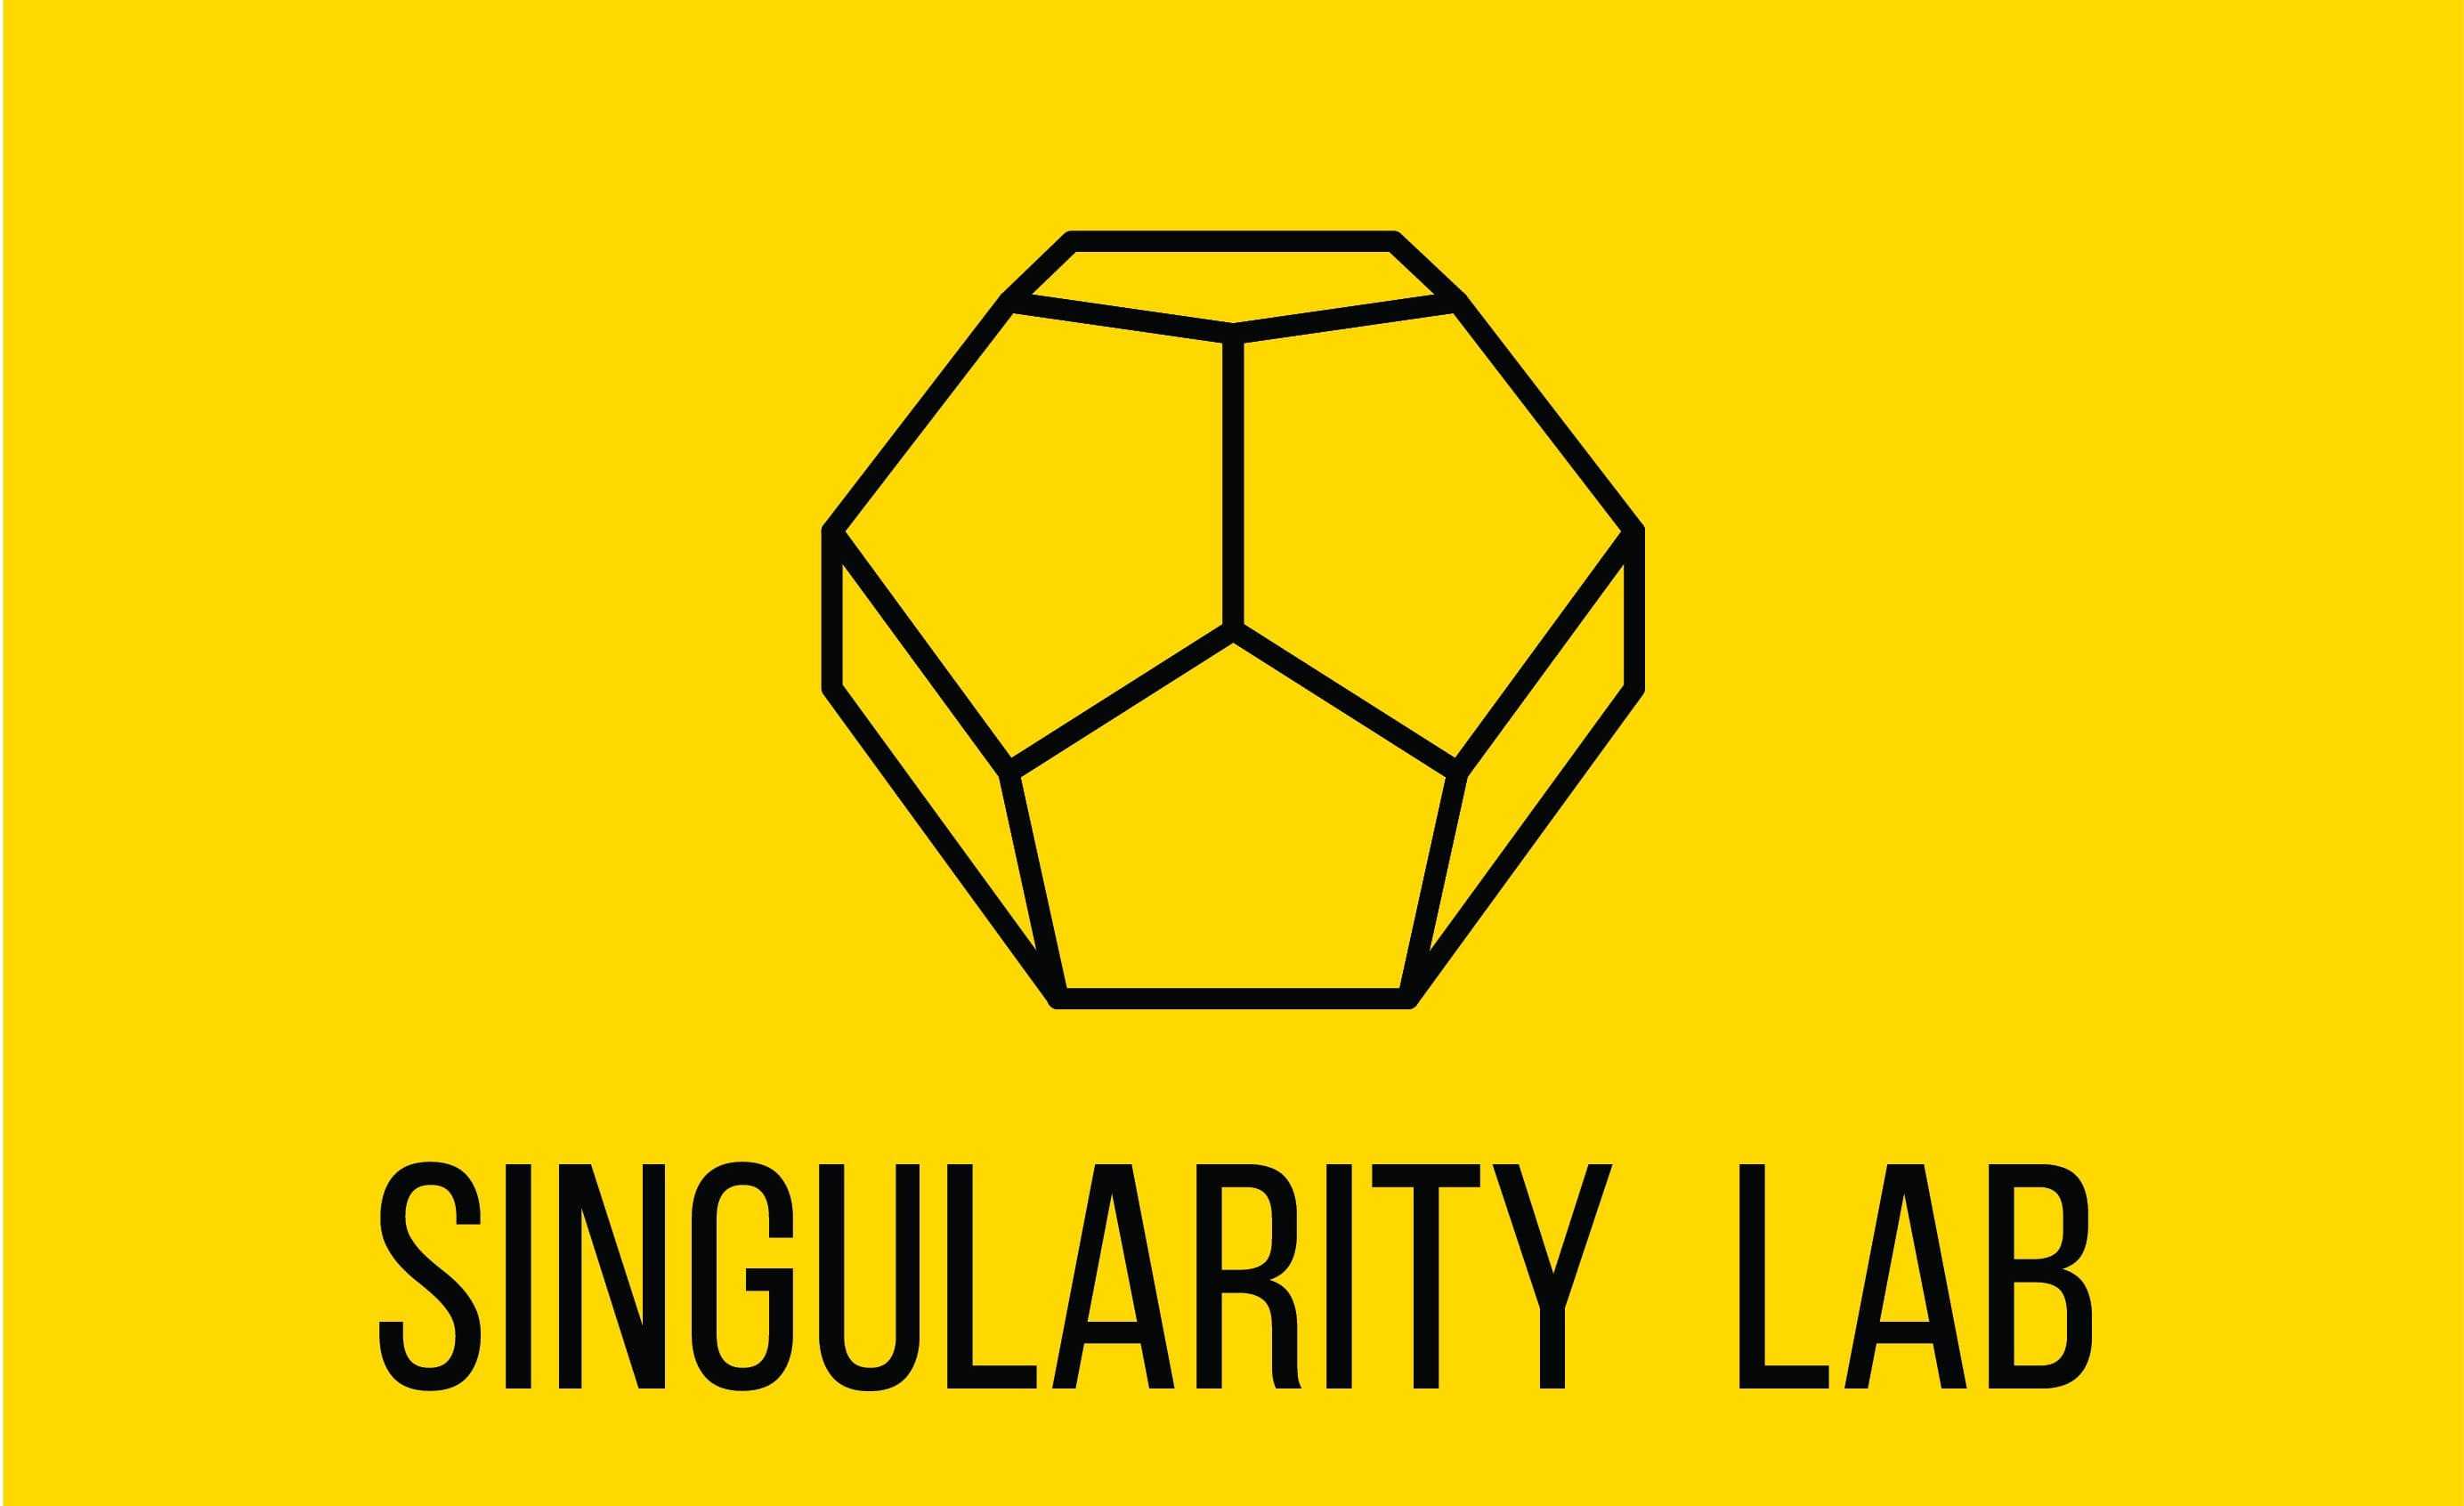 Singularity Lab – разработки полного цикла с применением новейших интерактивных технологий